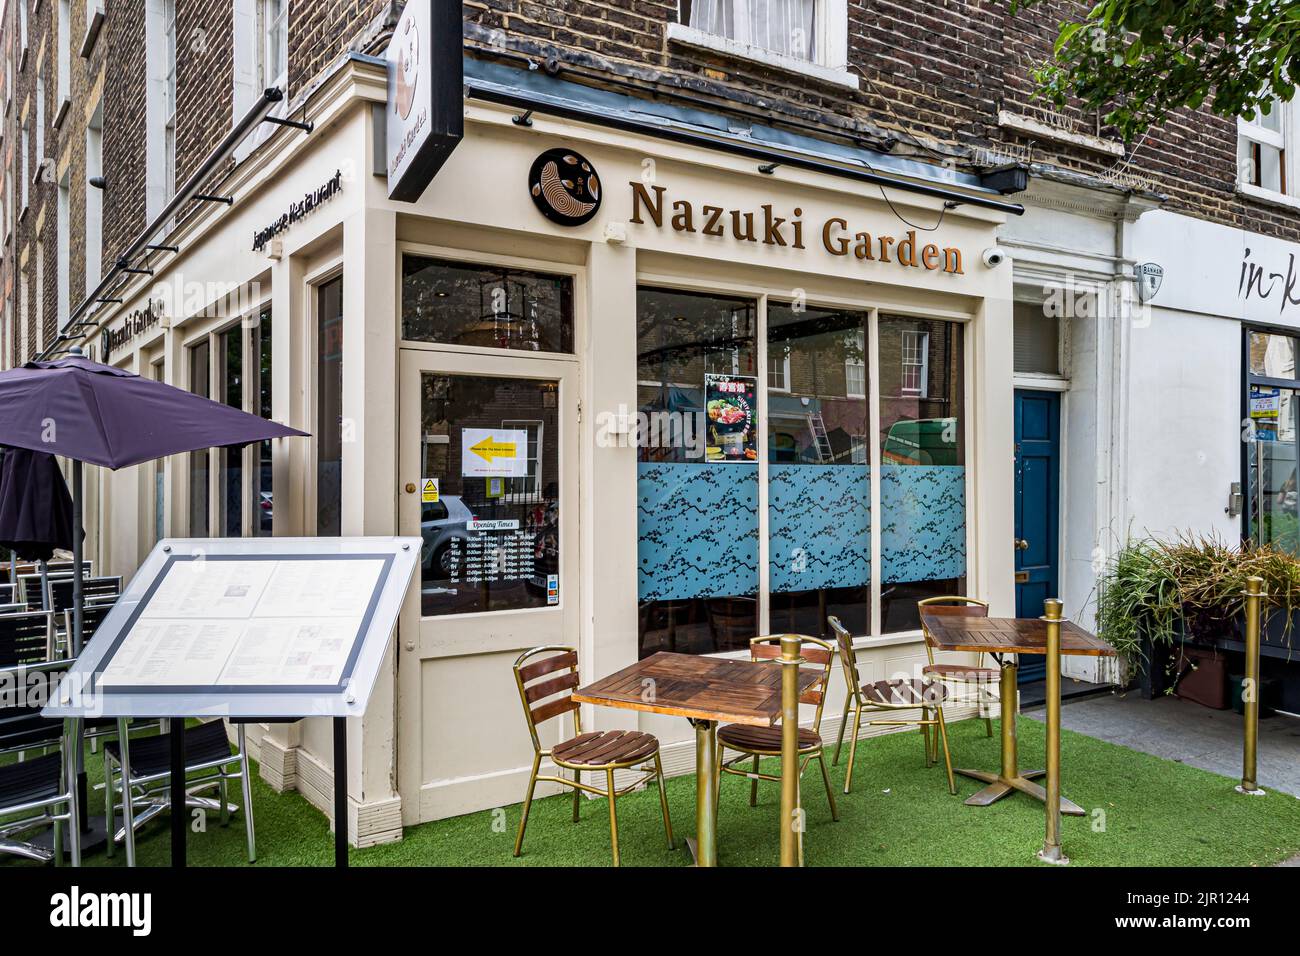 Tavoli e sedie all'esterno del Nazukj Garden, un ristorante giapponese in alto scala a Fitzrovia, Londra W1 Foto Stock